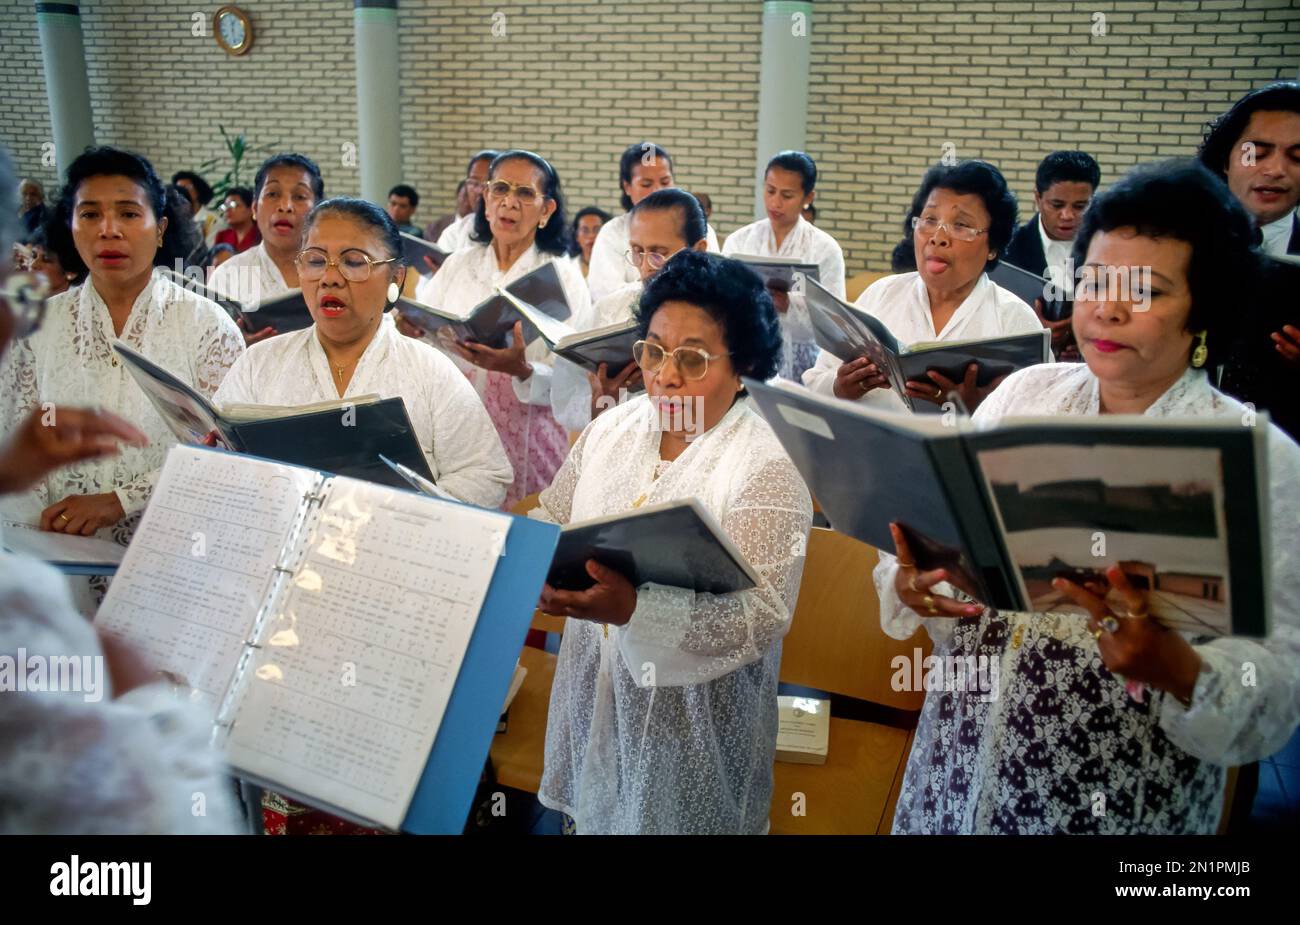 Paesi Bassi, Tiel. Donne ambonesi di Maluku durante una messa nella loro chiesa. Foto Stock